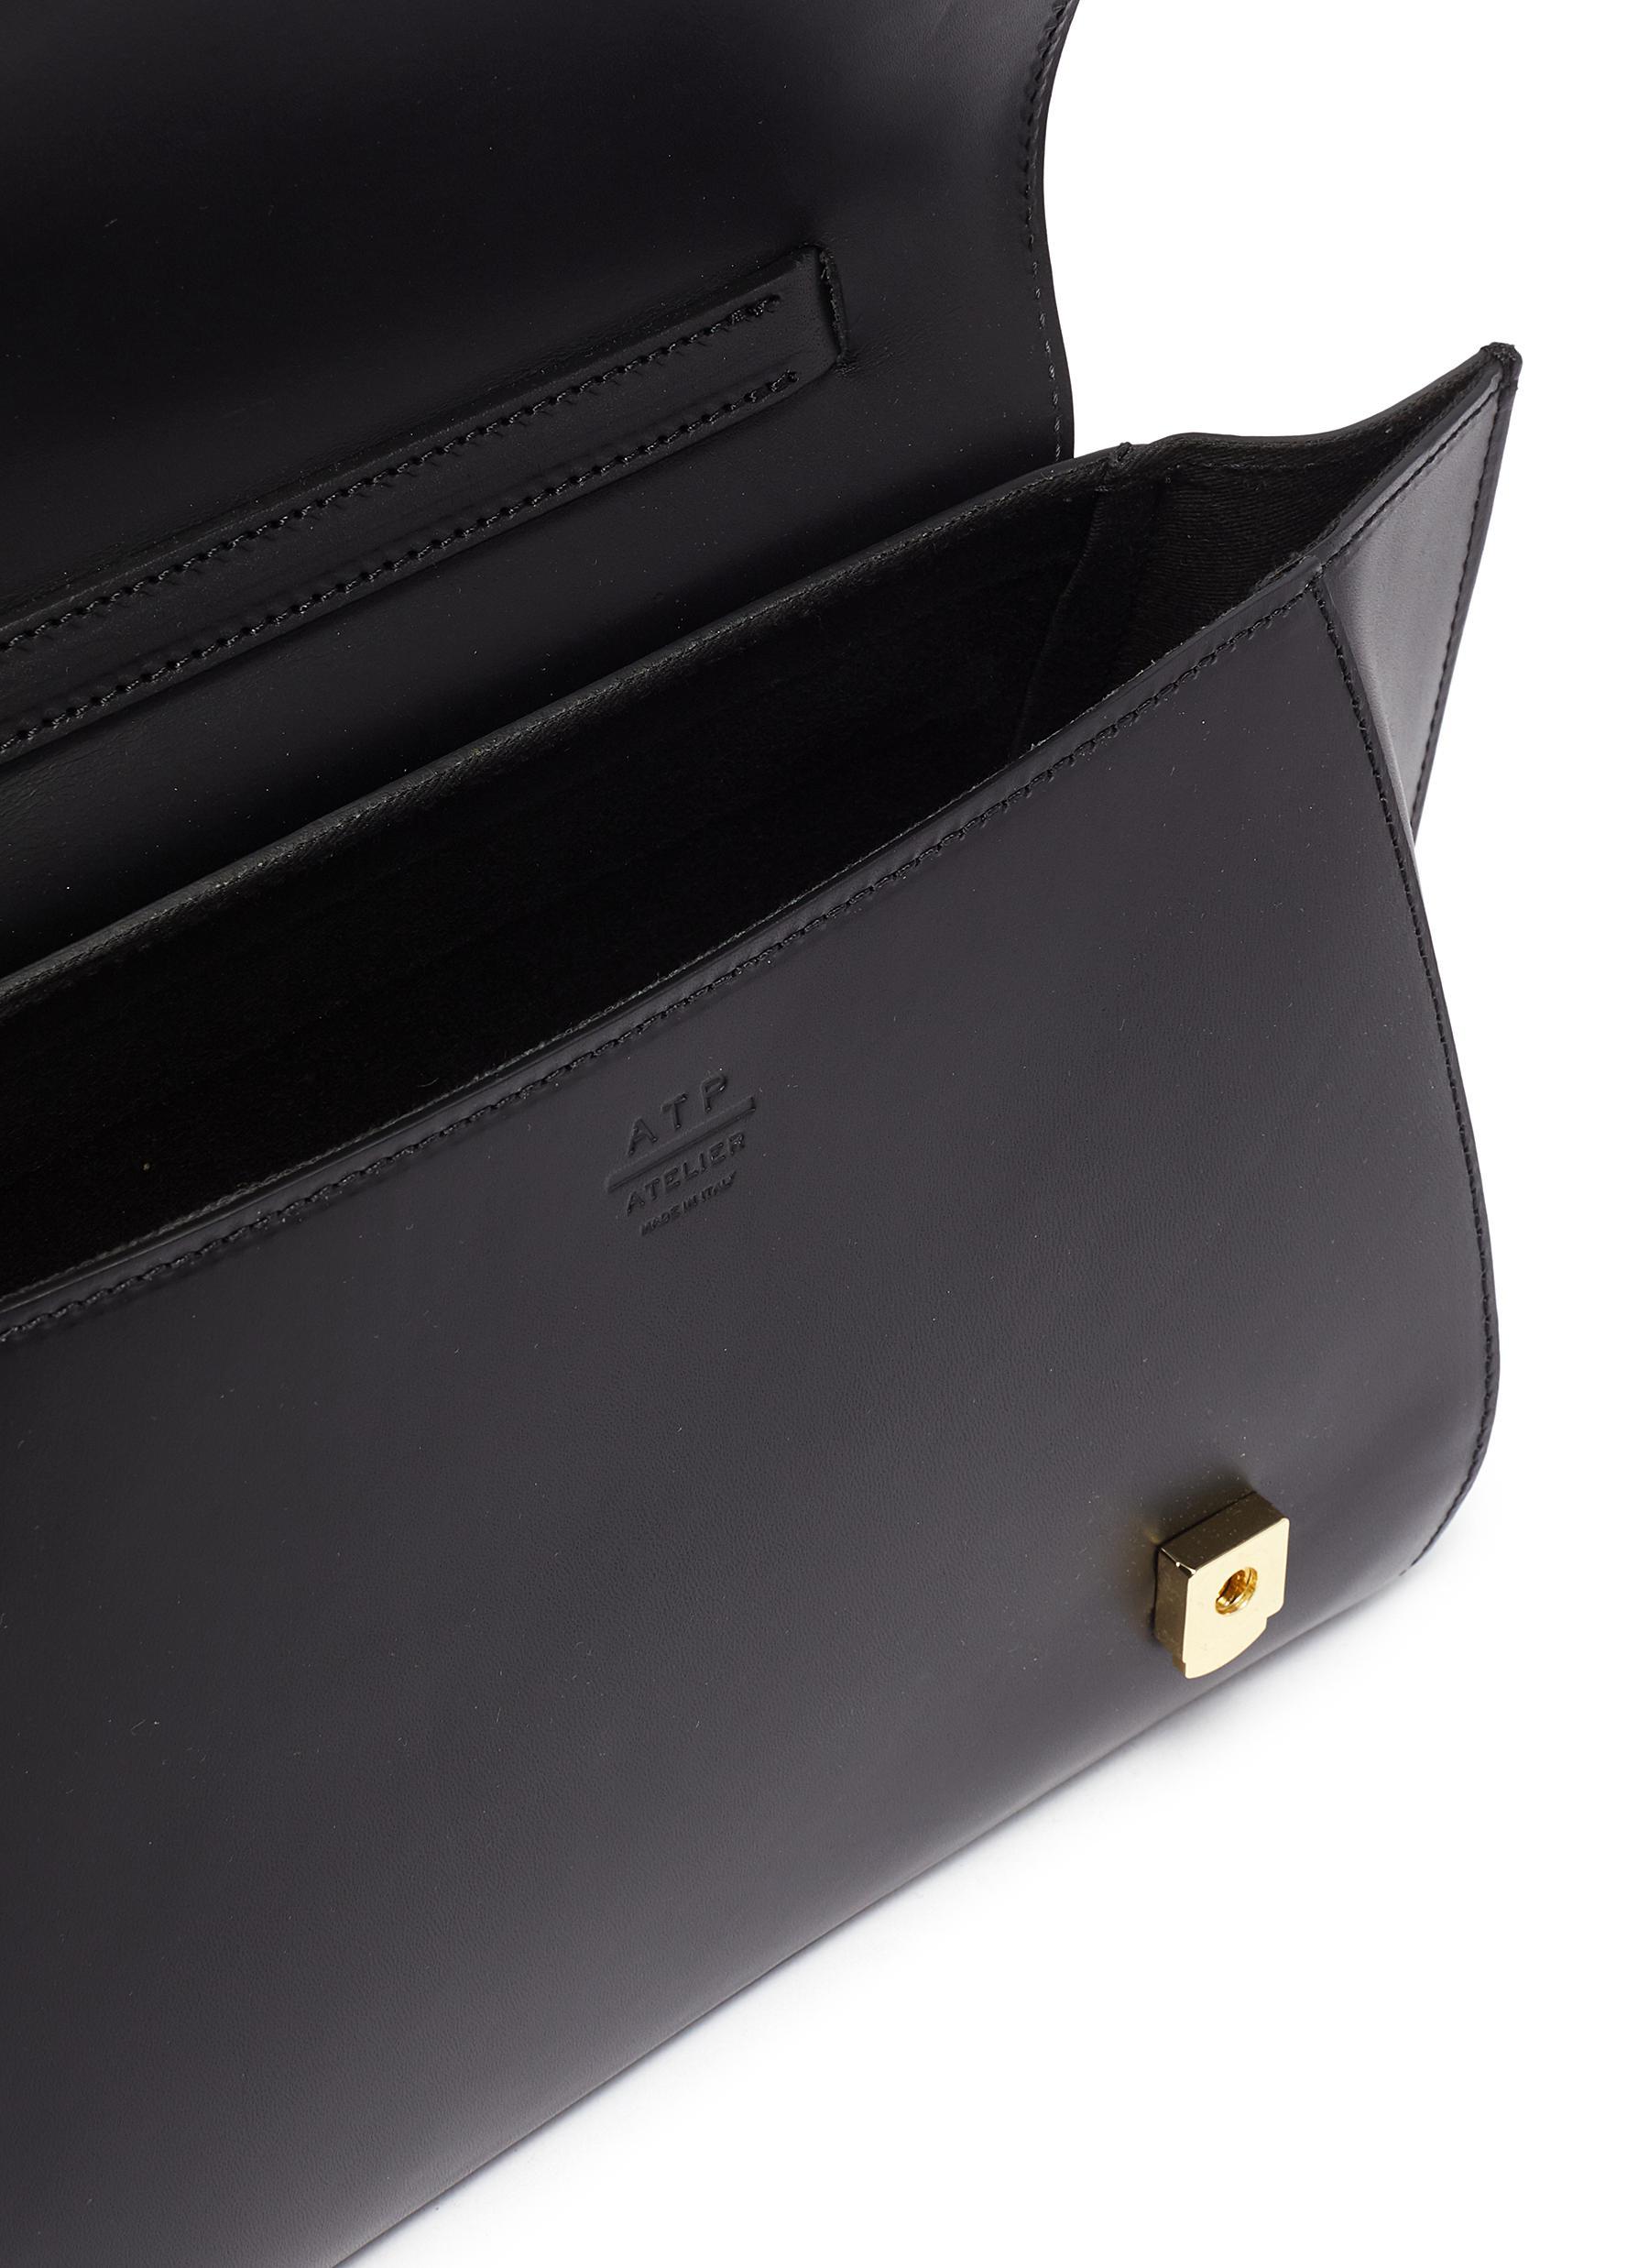 Atp Atelier 'arezzo' Medium Leather Shoulder Bag in Black - Lyst